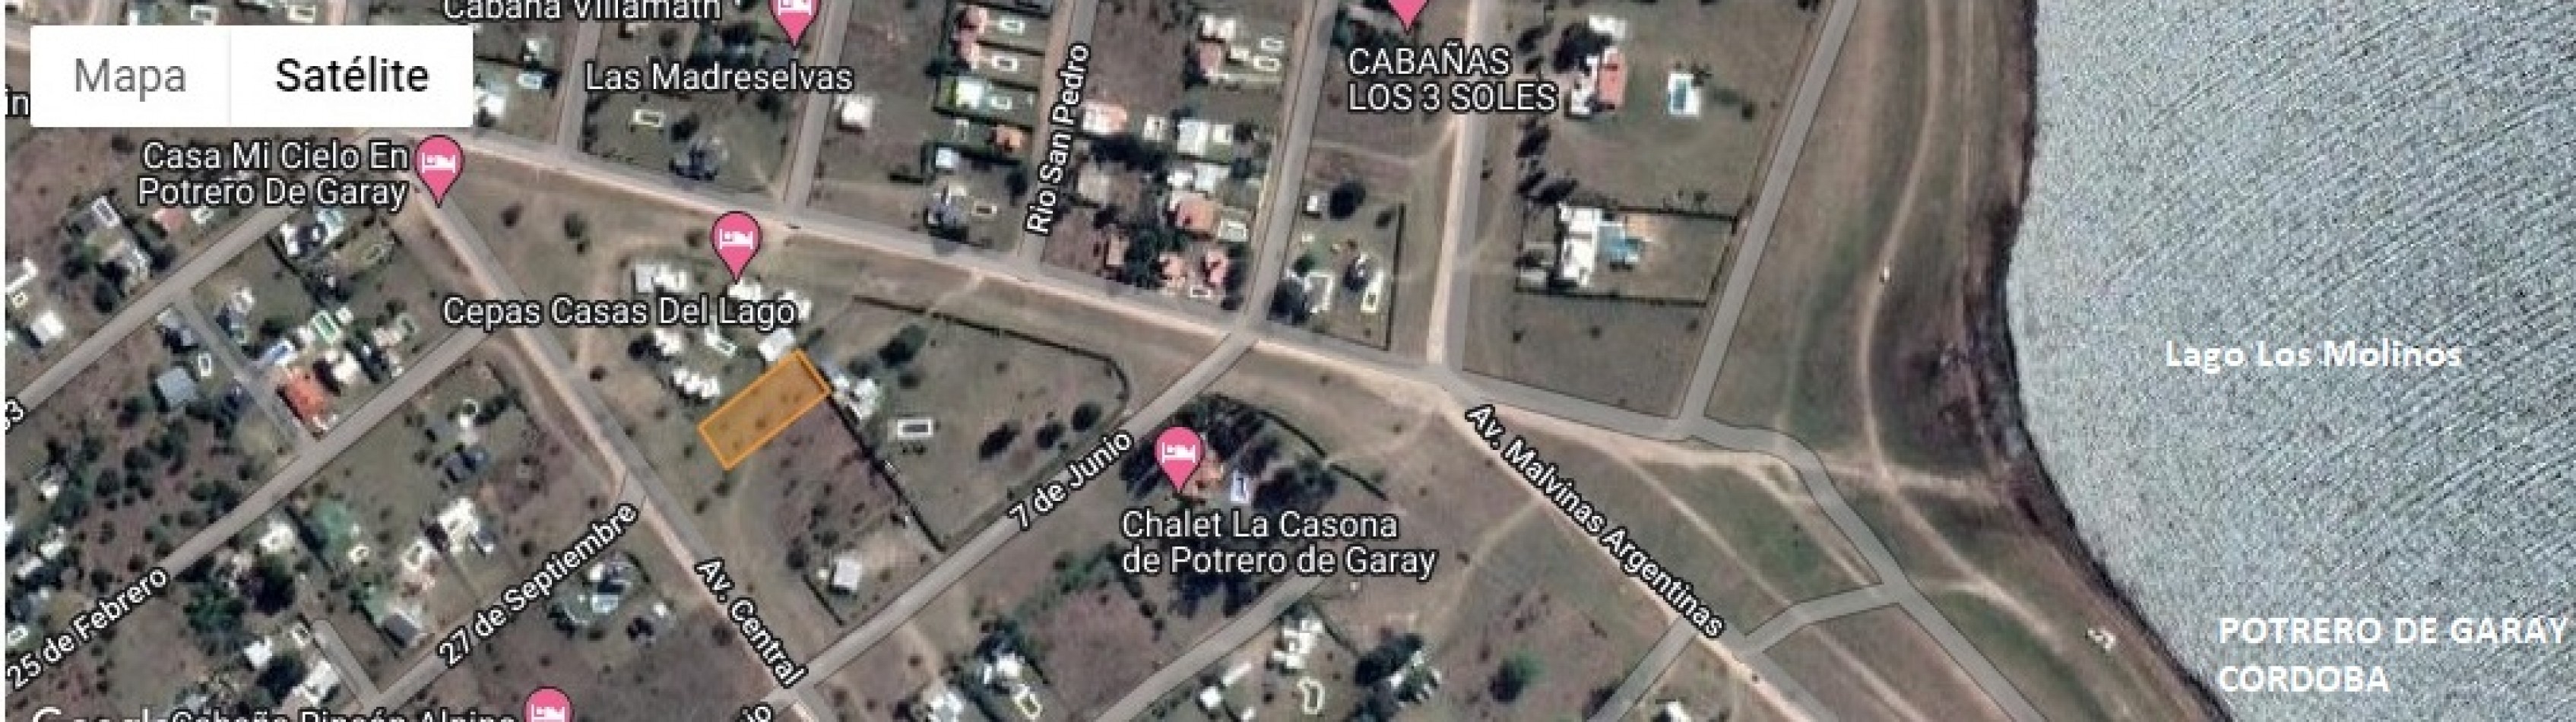 TERRENO 1.000 m2 A METROS LAGO LOS MOLINOS-POTRERO DE GARAY-CORDOBA-ESCRITURA